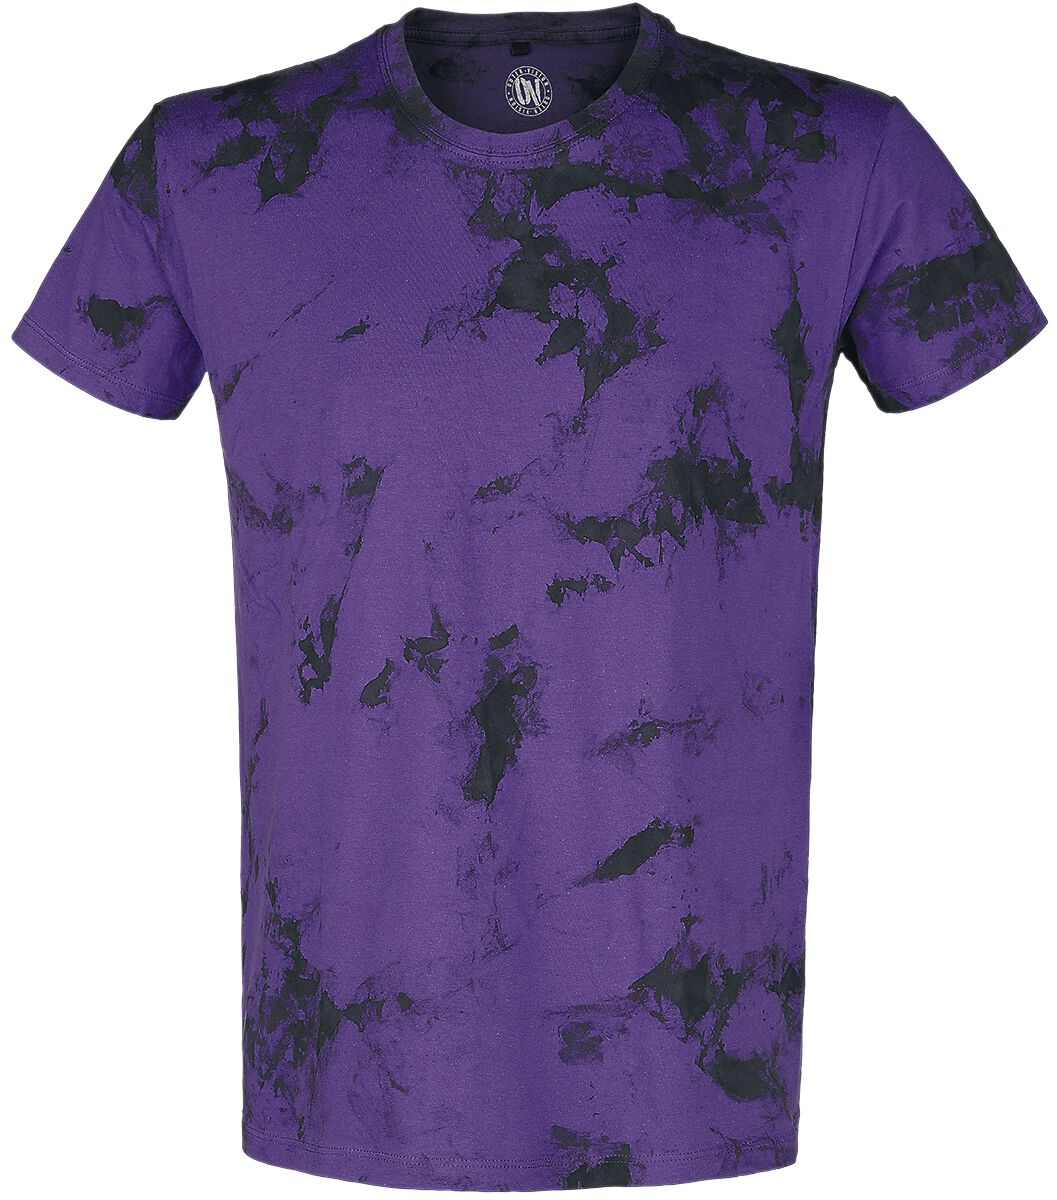 T-Shirt Manches courtes de Outer Vision - T-Shirt Homme - S à XXL - pour Homme - noir/lilas